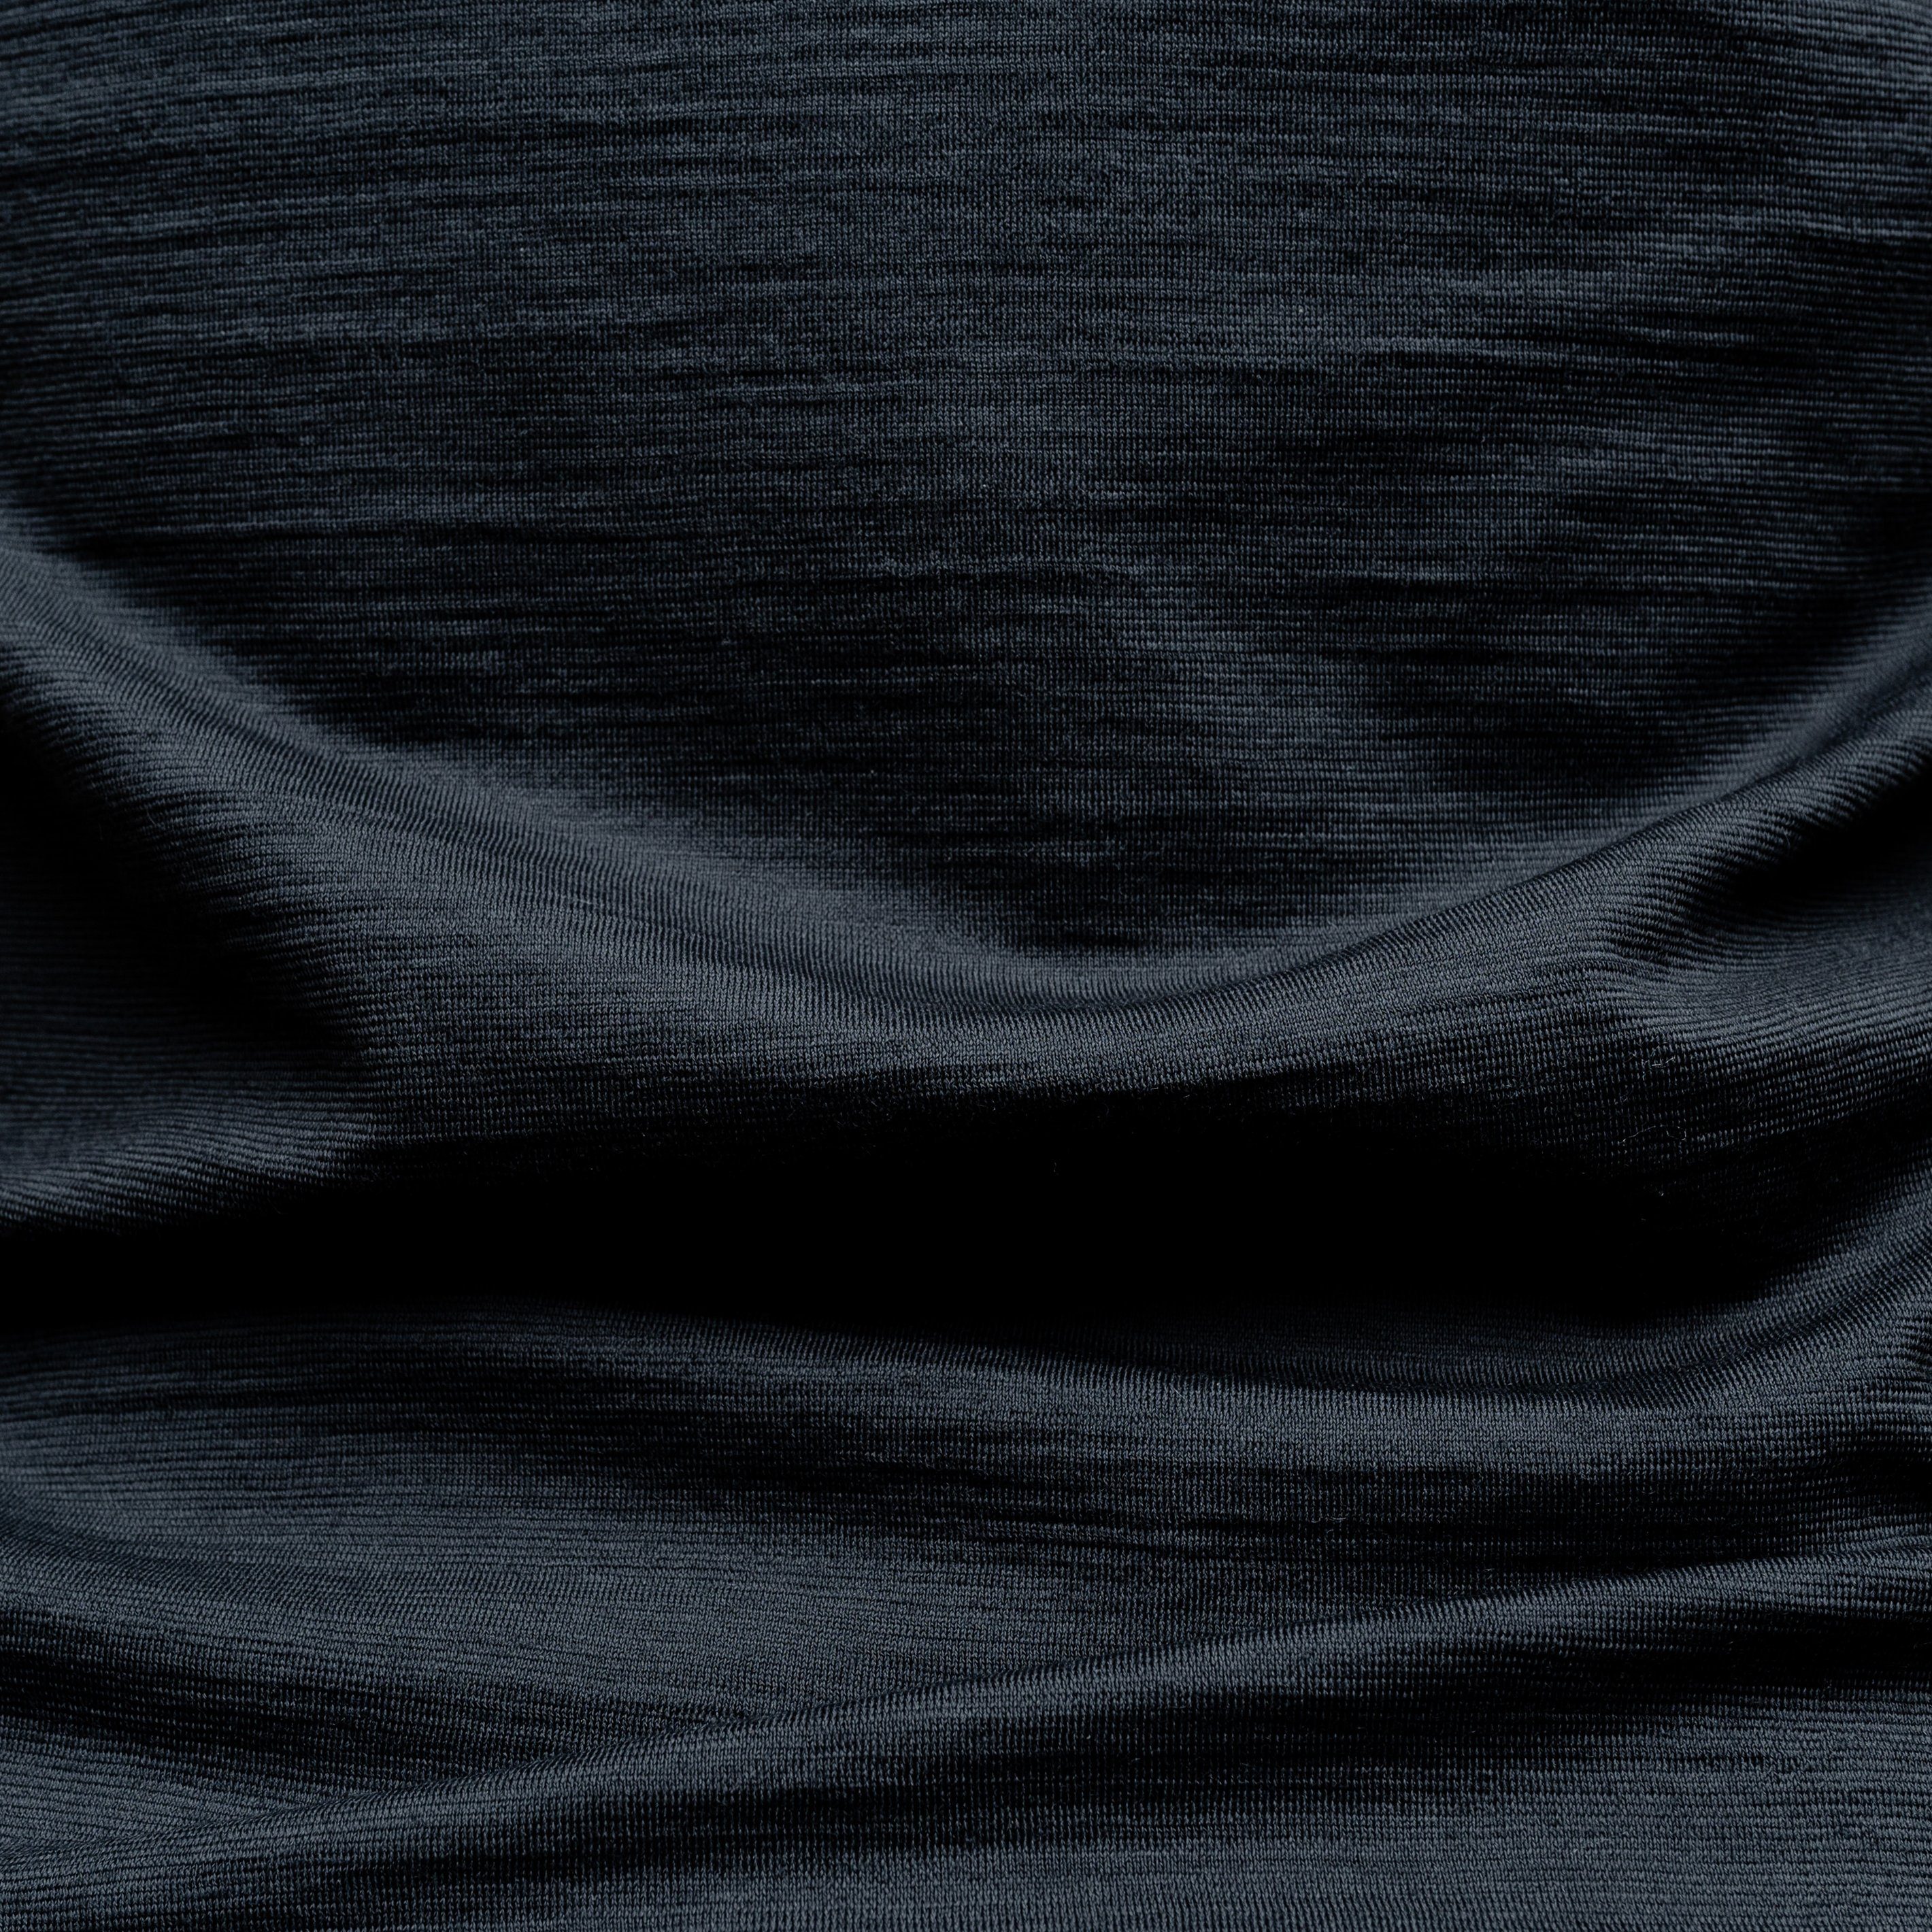 Tom Fyfe T-Shirt Merino T-Shirt Damen Anthrazit V-Ausschnitt